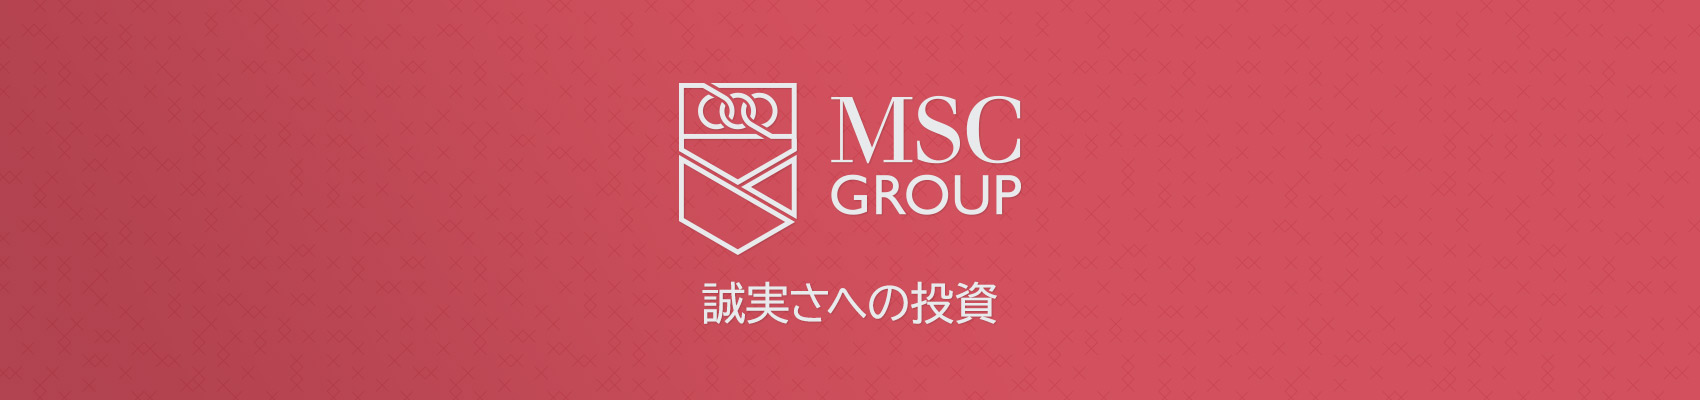 MSC-Logo-redpanel-Japanese